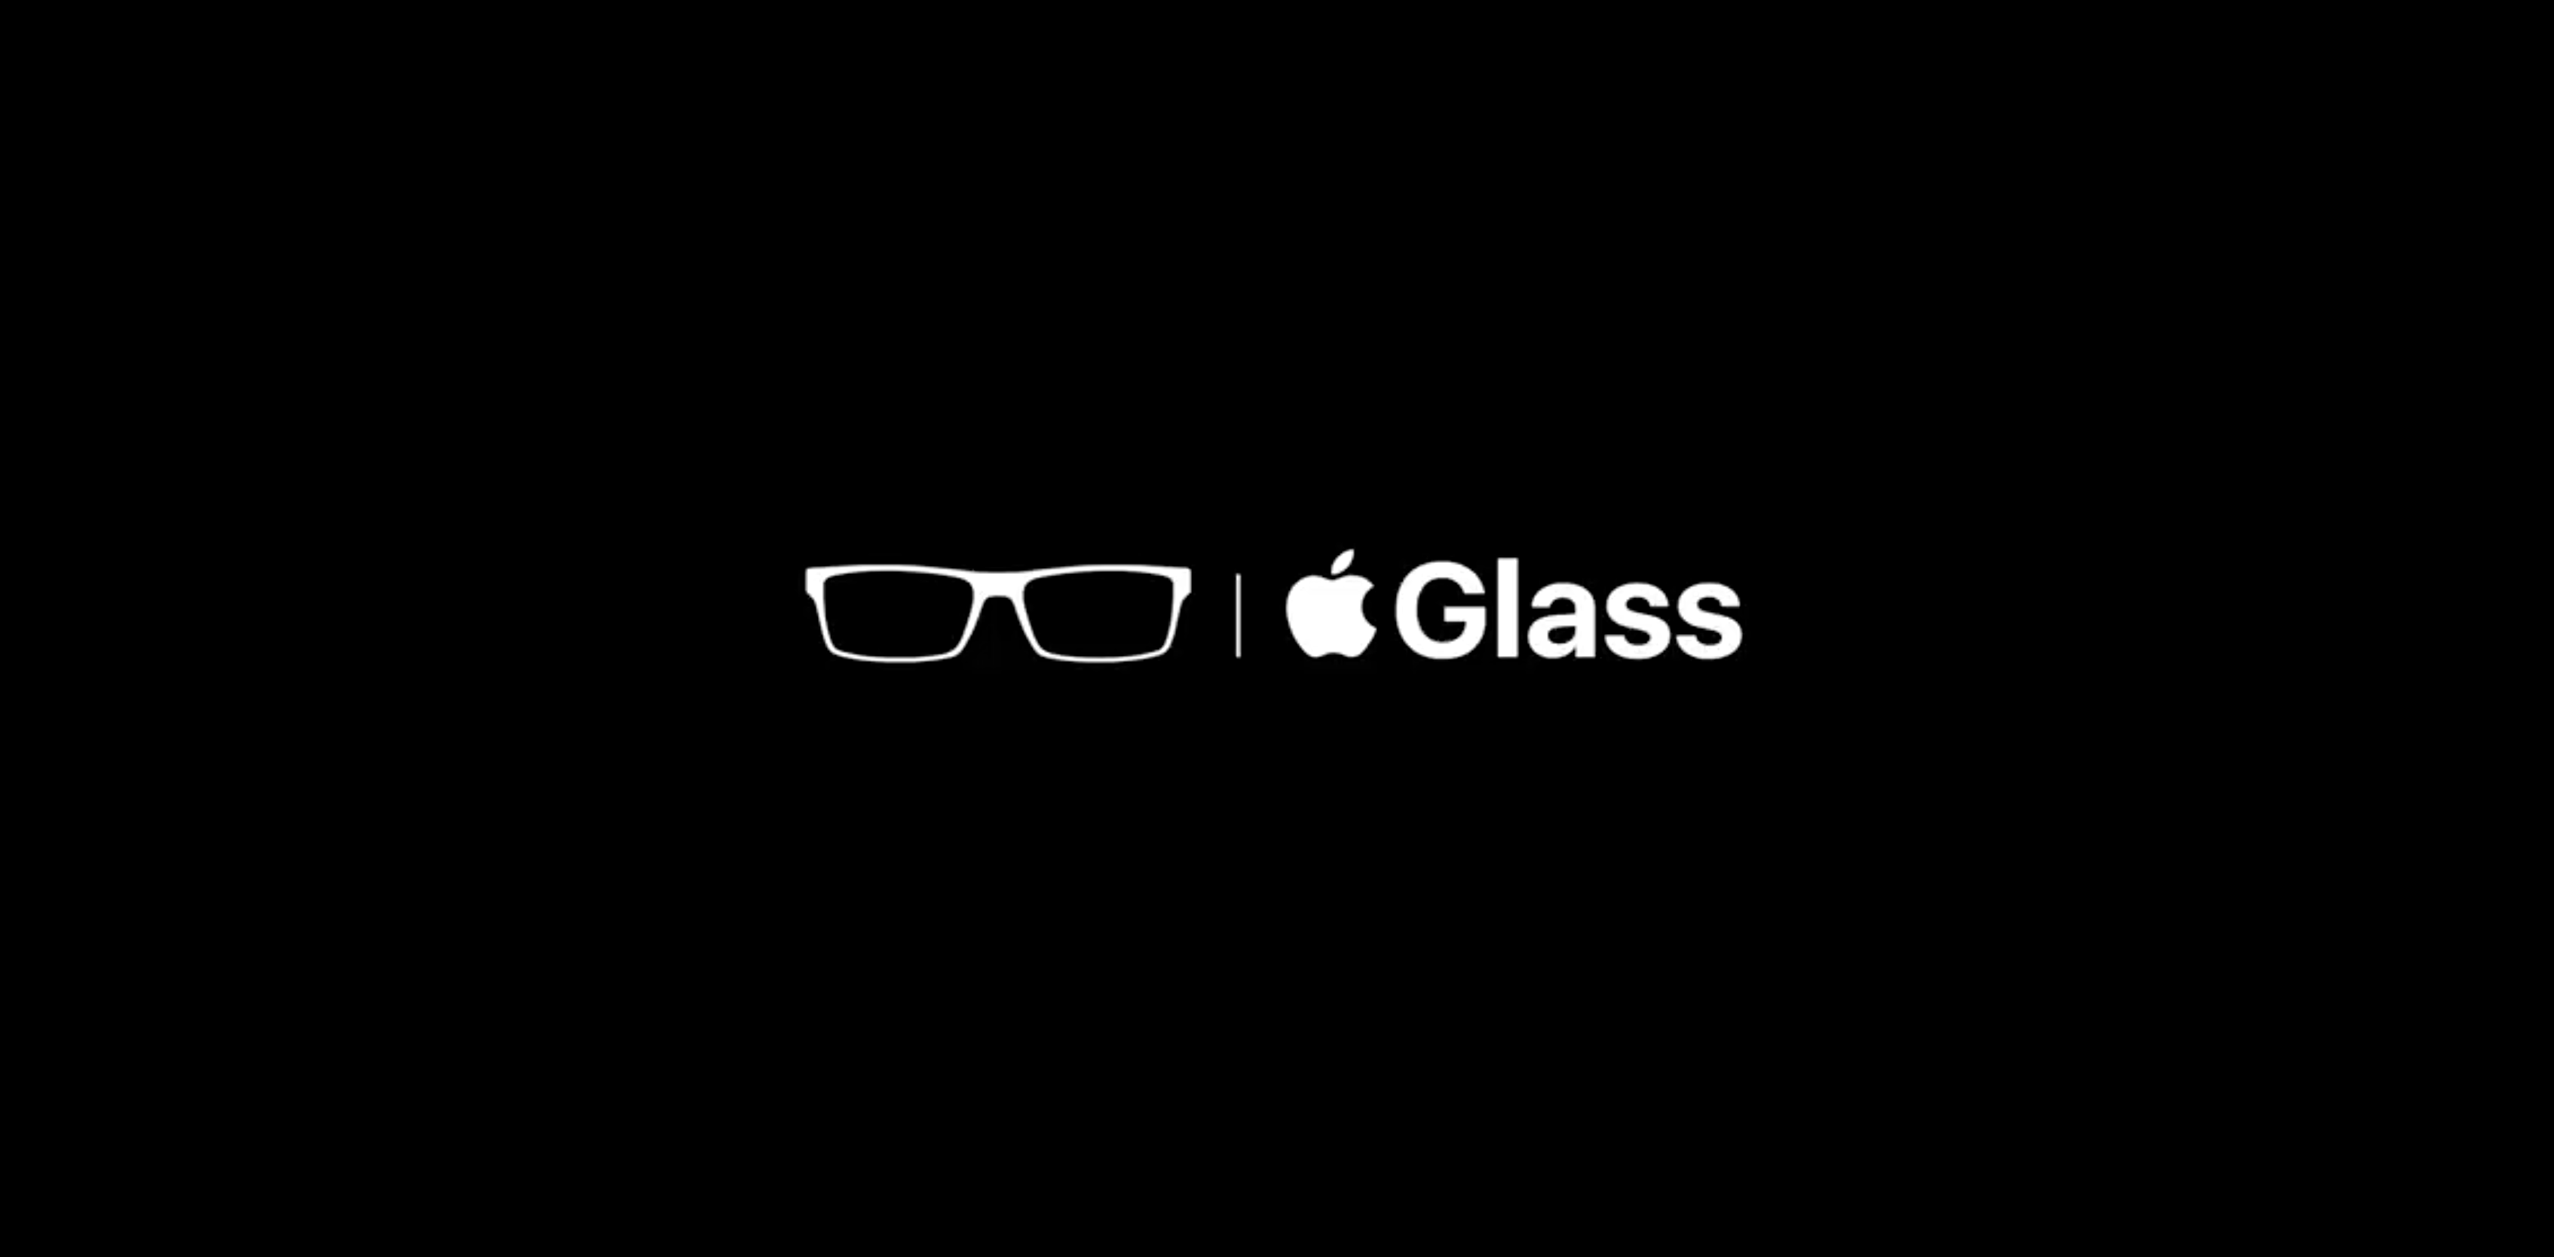 أخبار 21 ديسمبر 2020 براءة اختراع جديدة Apple ينبثق الزجاج ويصف العدسة التي تتفاعل مع الضوء